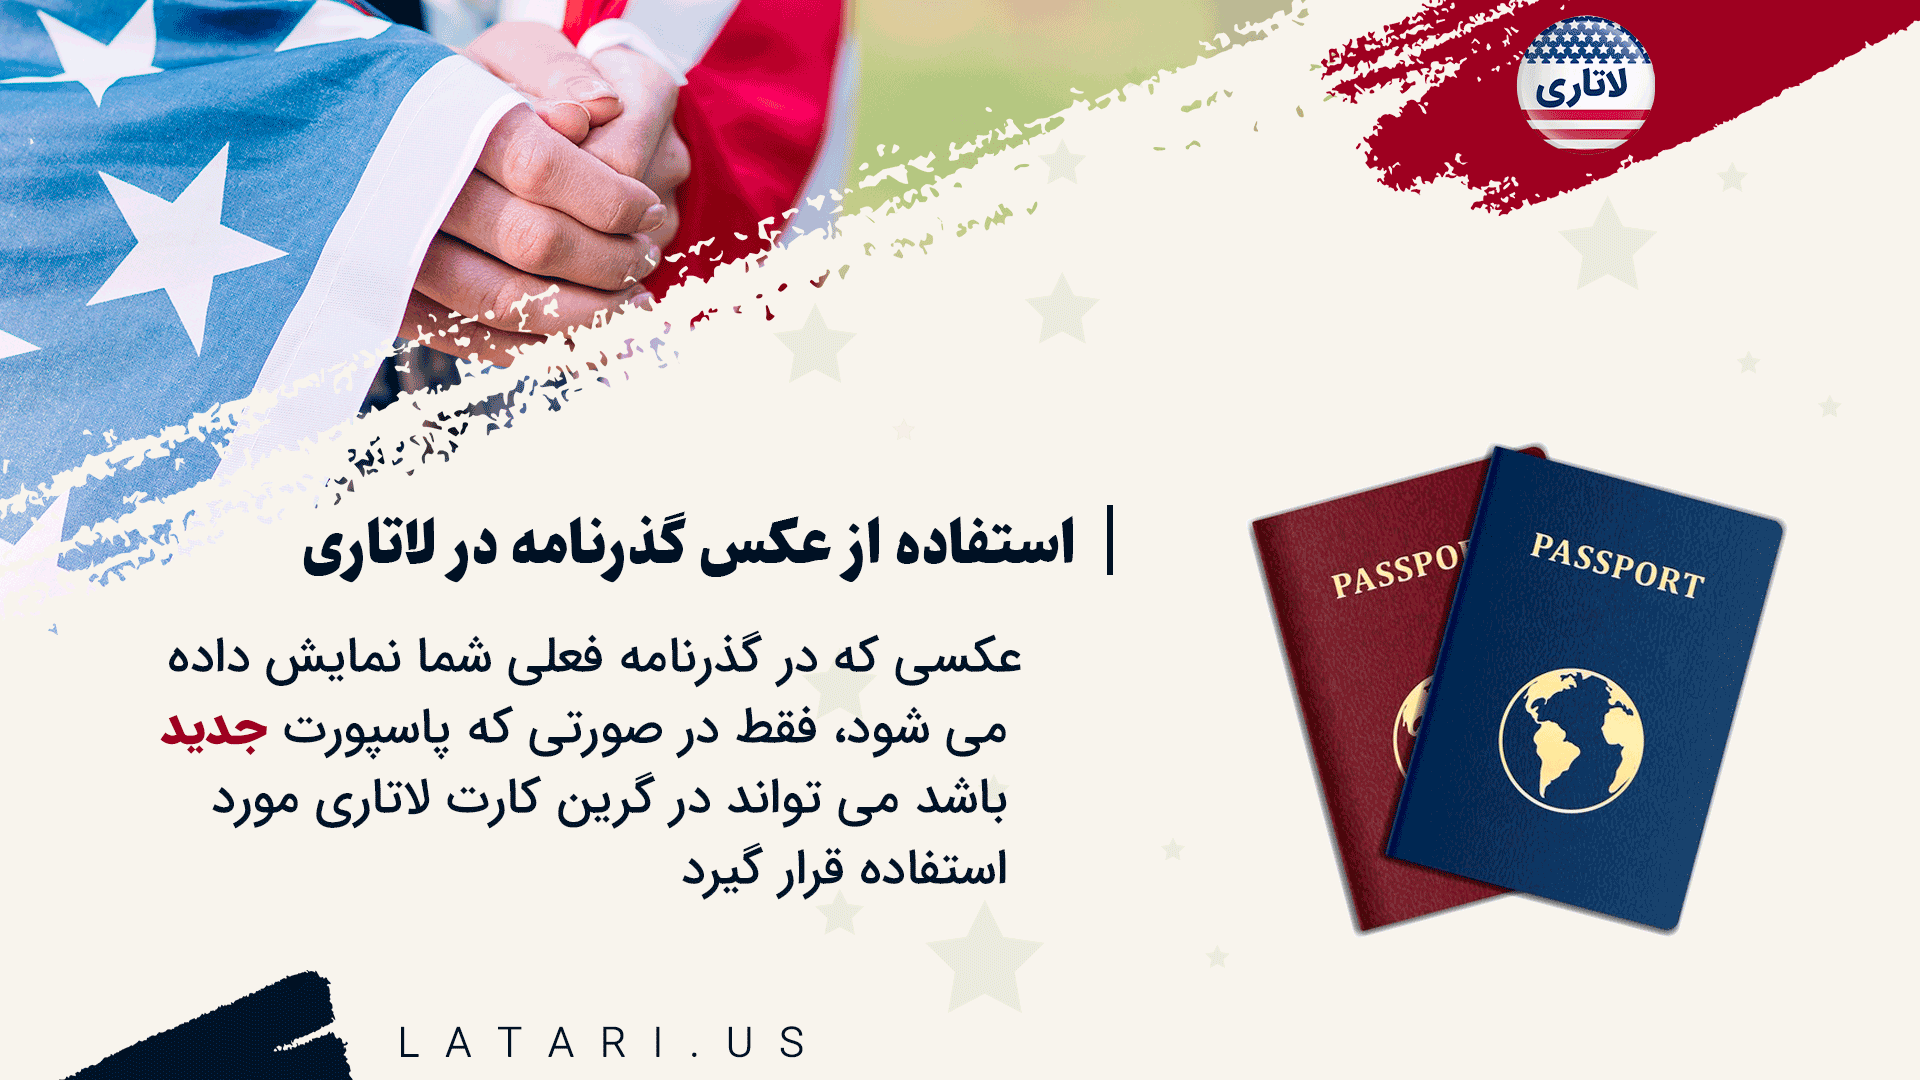 استفاده از عکس گذرنامه خود برای لاتاری